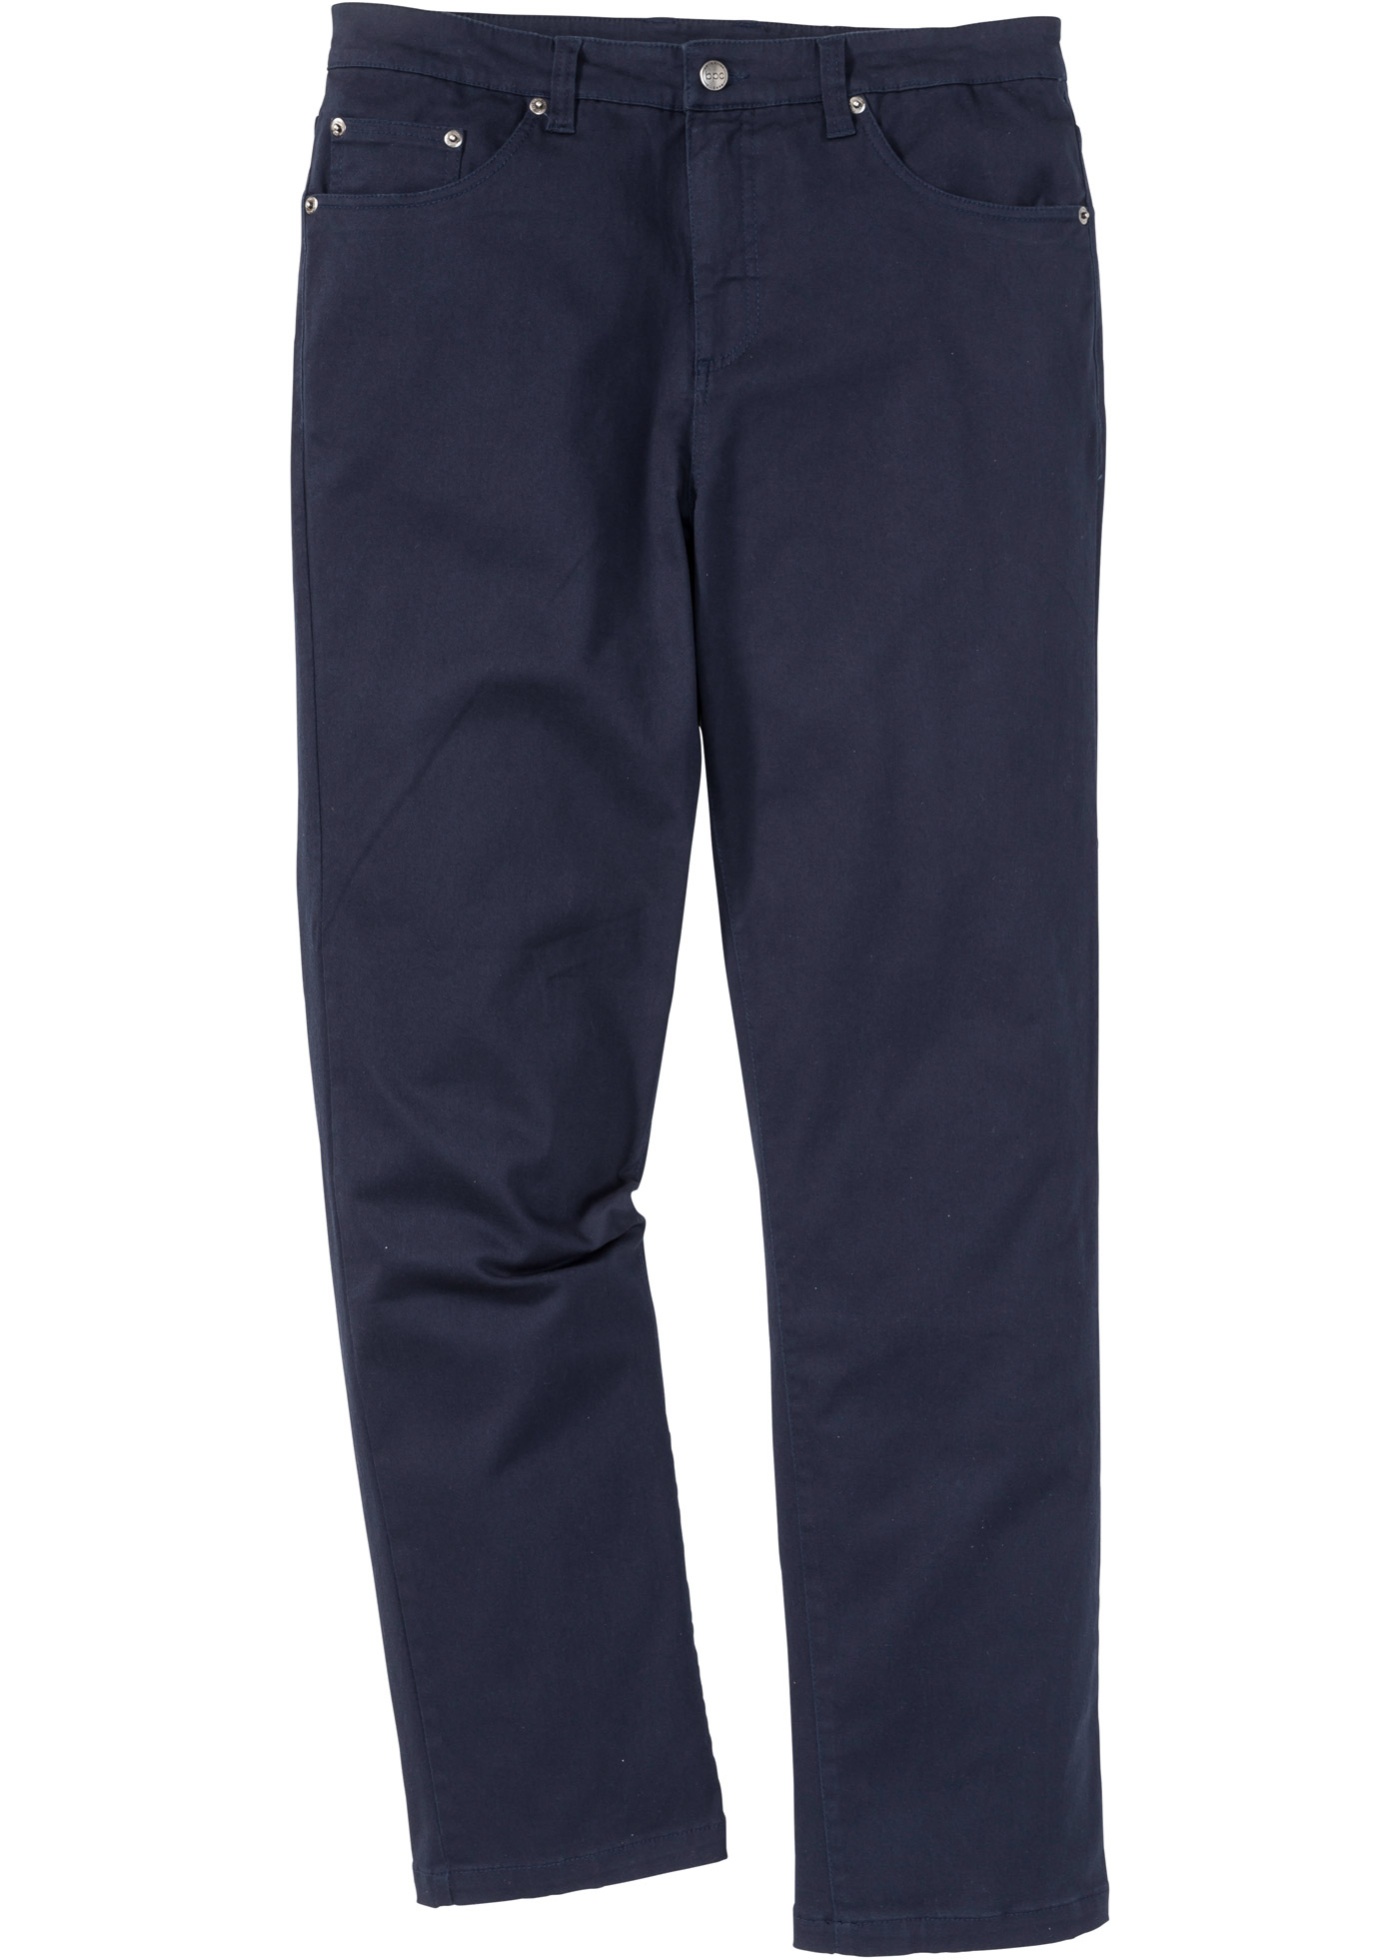 Pantaloni elasticizzati classic fit straight (Blu) - bpc bonprix collection